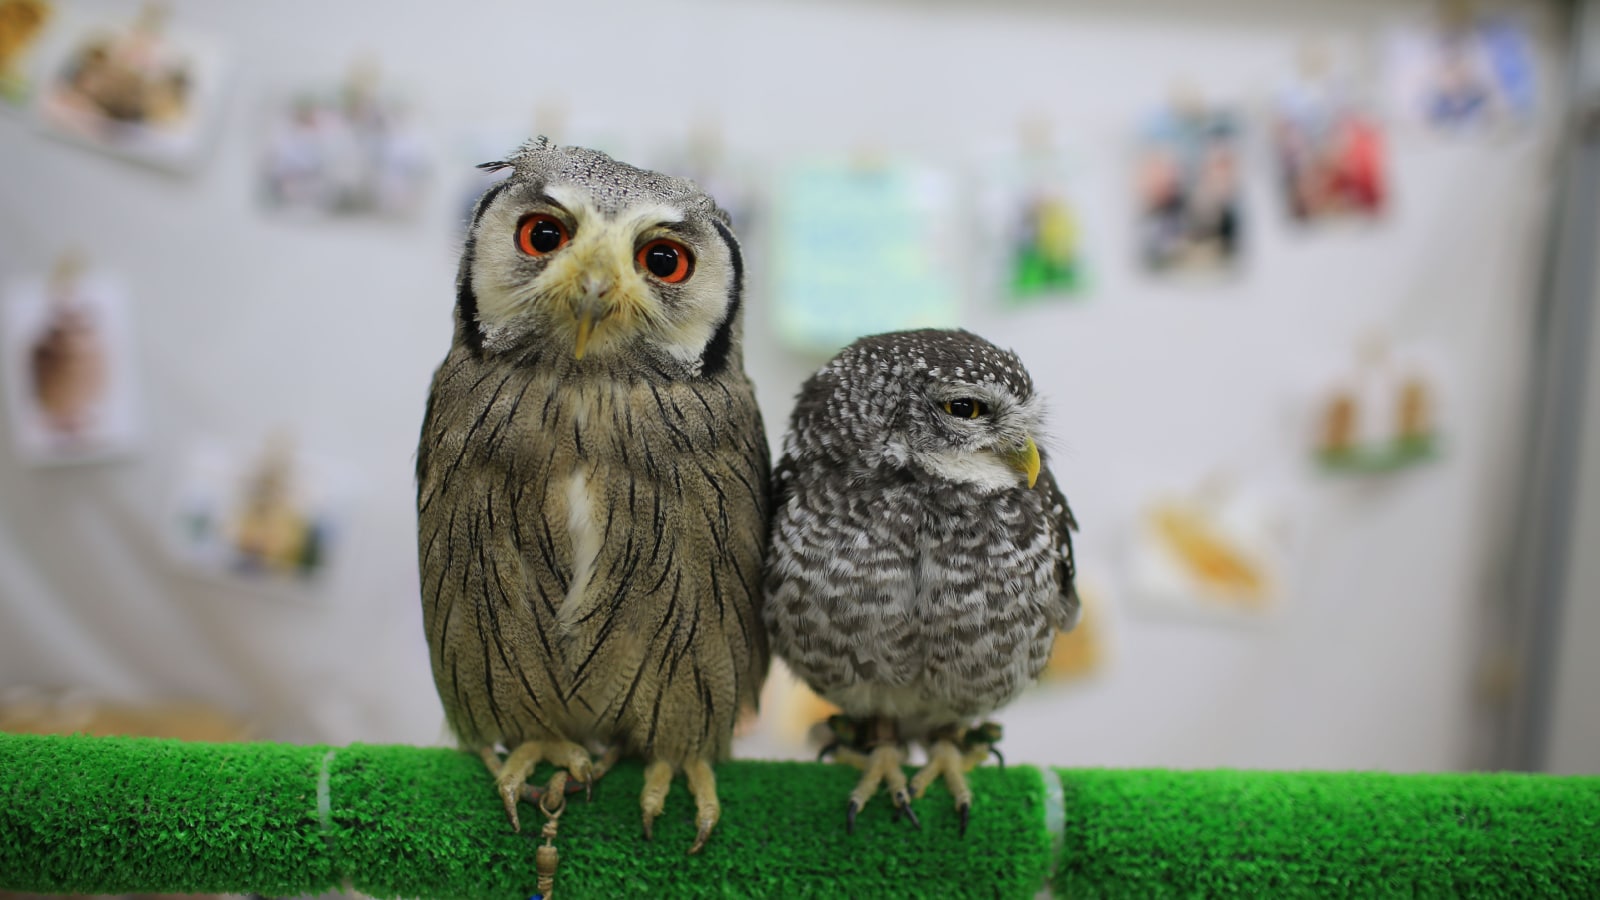 Owl Cafe in Tokyo